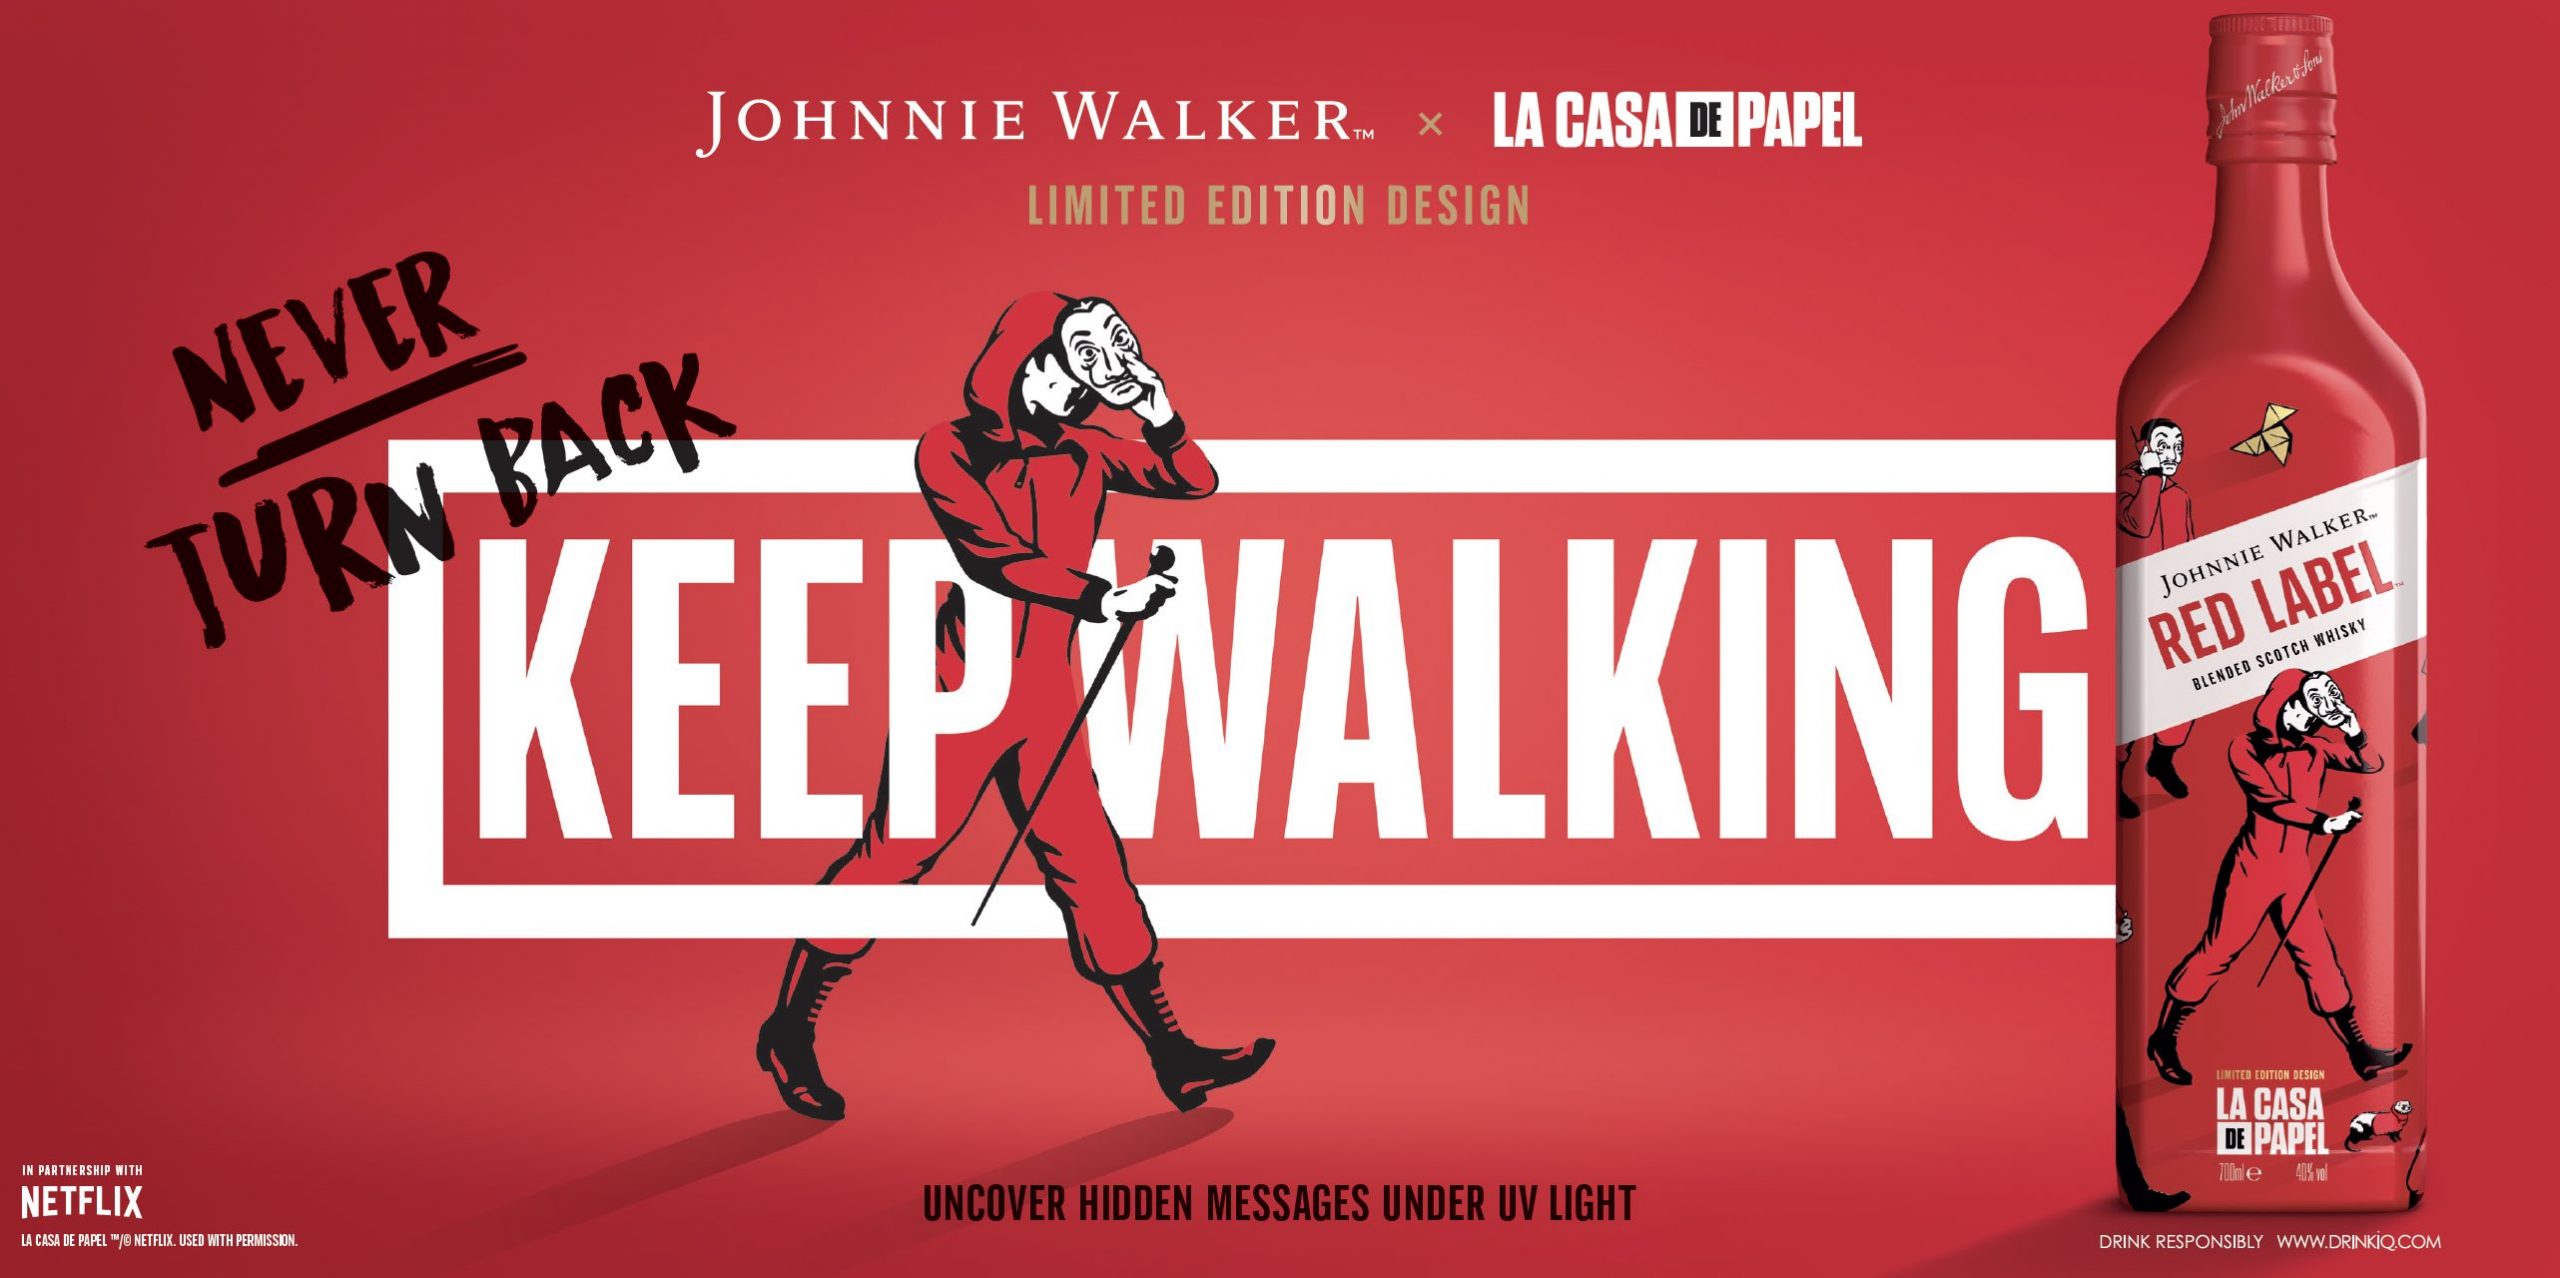 Johnnie Walker lanza botella Etiqueta Roja con diseño de La Casa De Papel